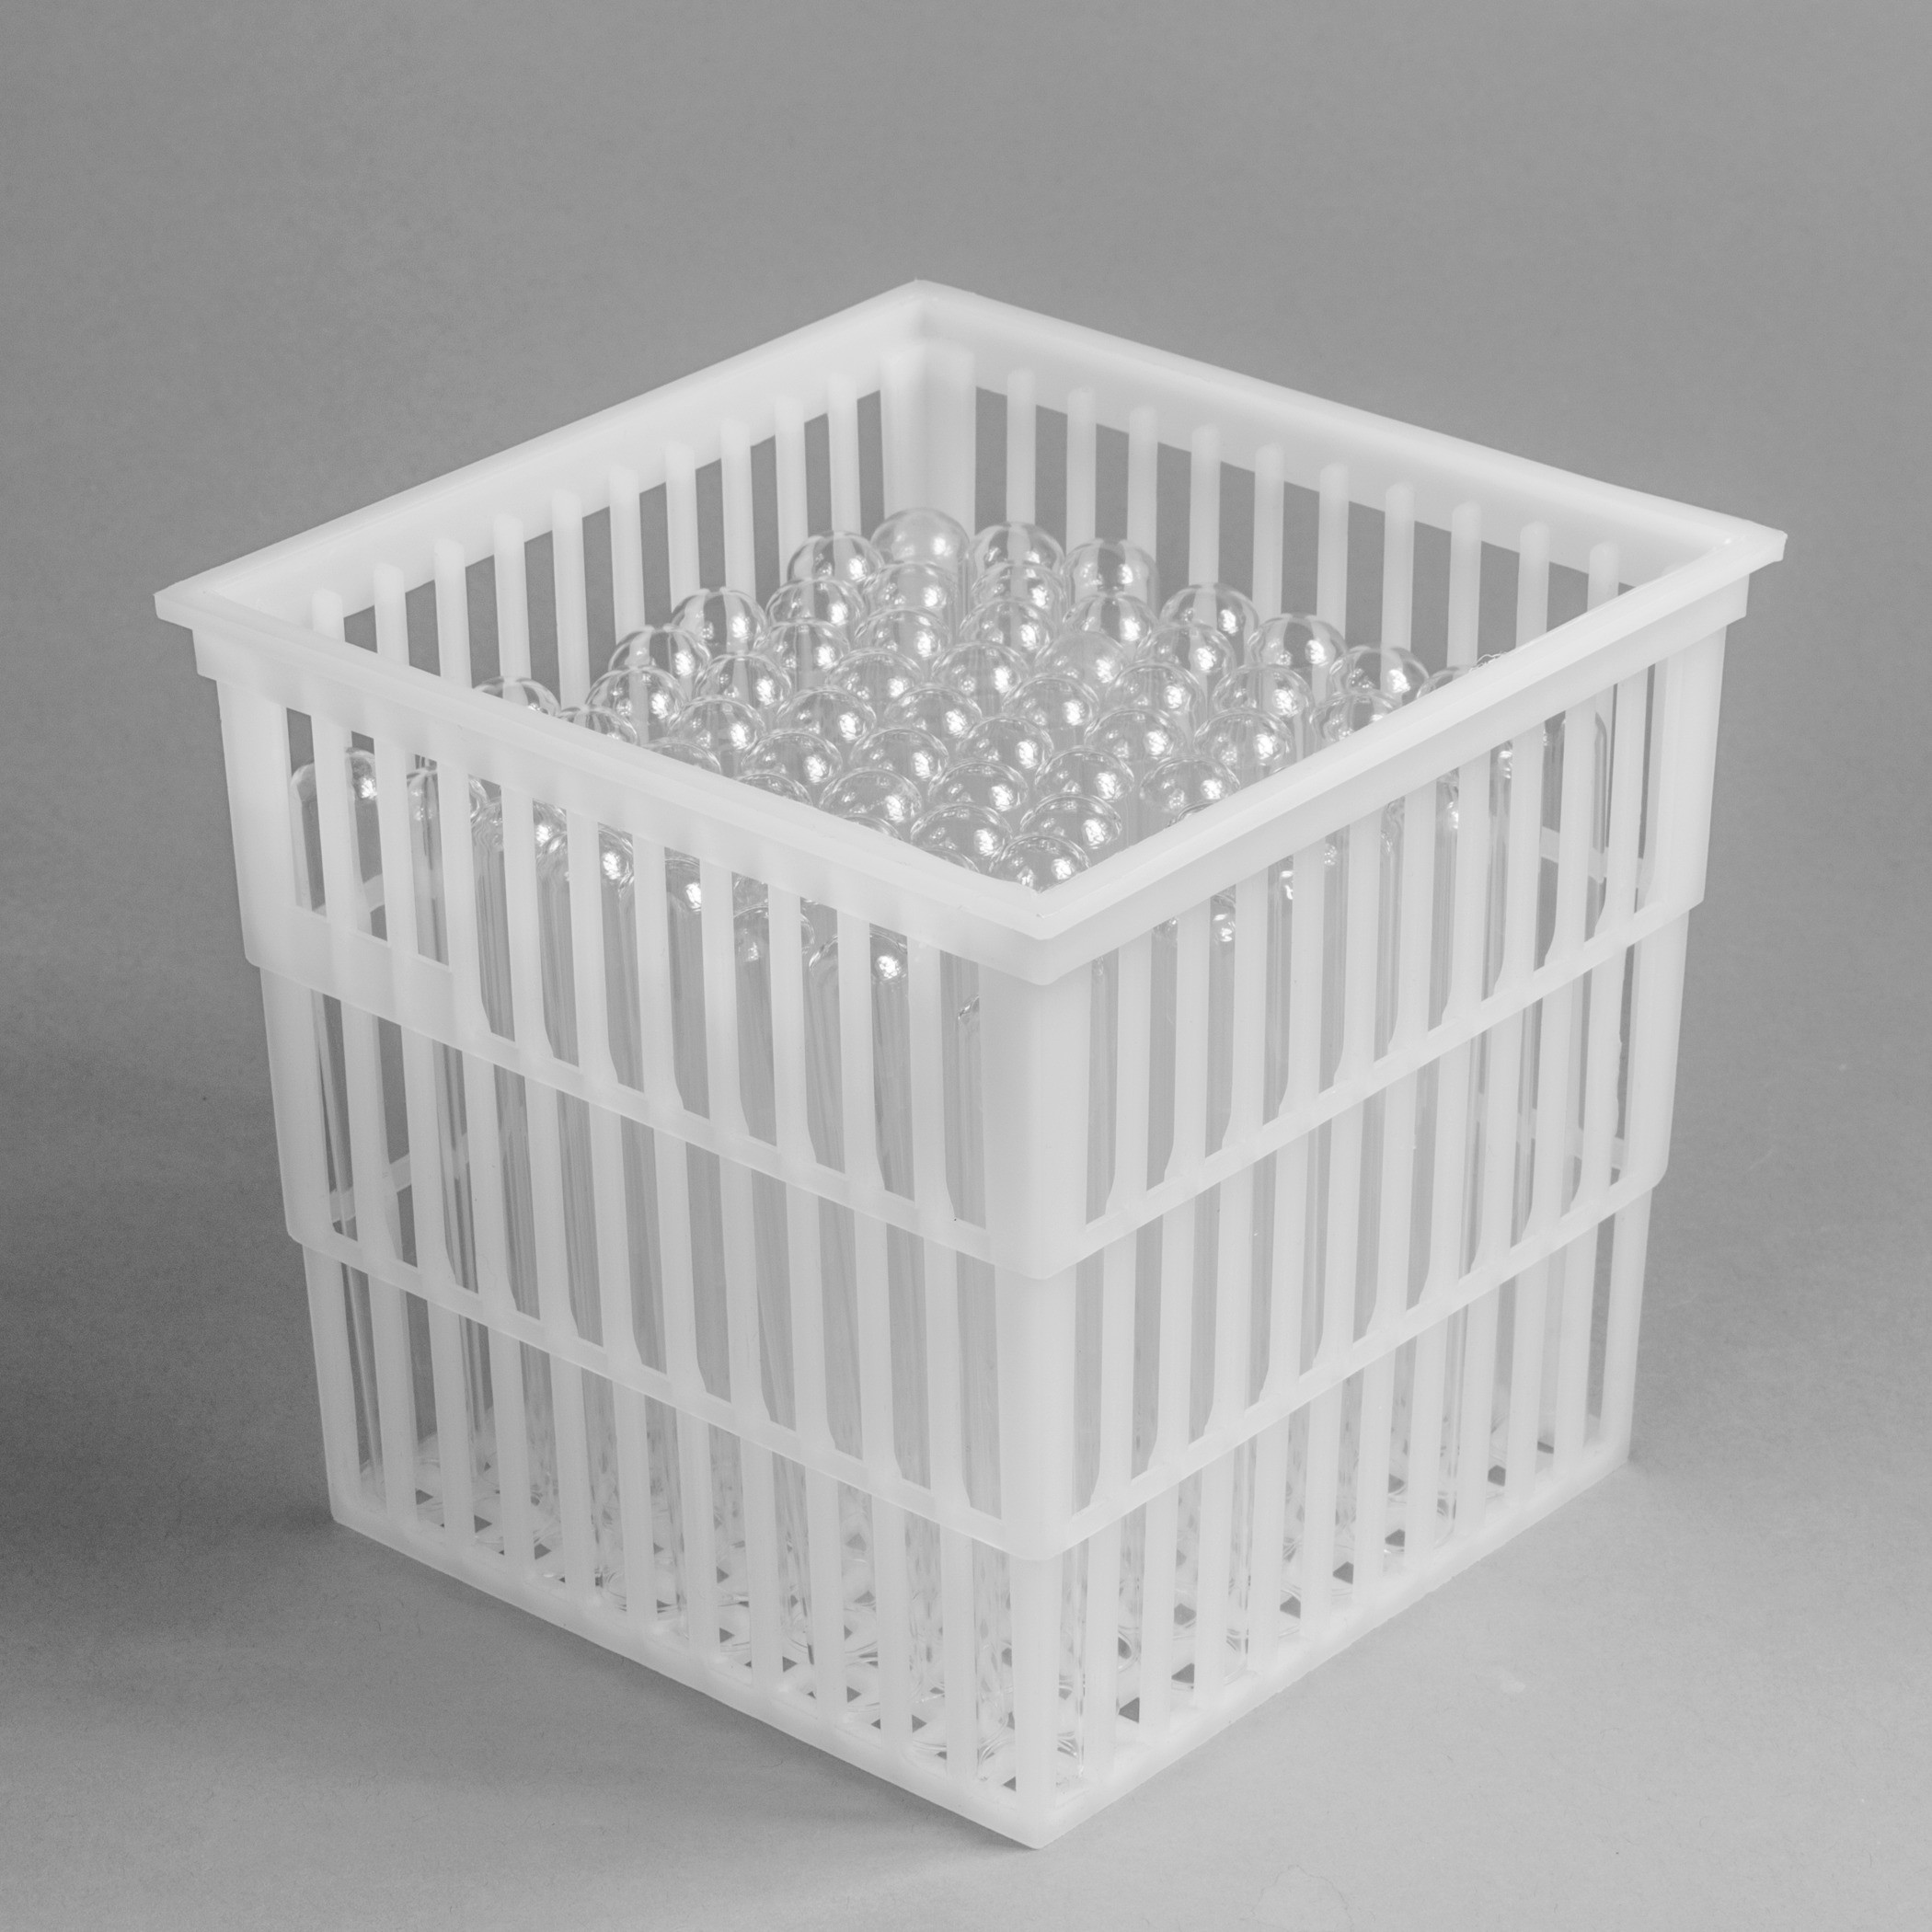 SP Bel-Art Polypropylene Test Tube Basket; 6 x 6 x 6 in., No Lid